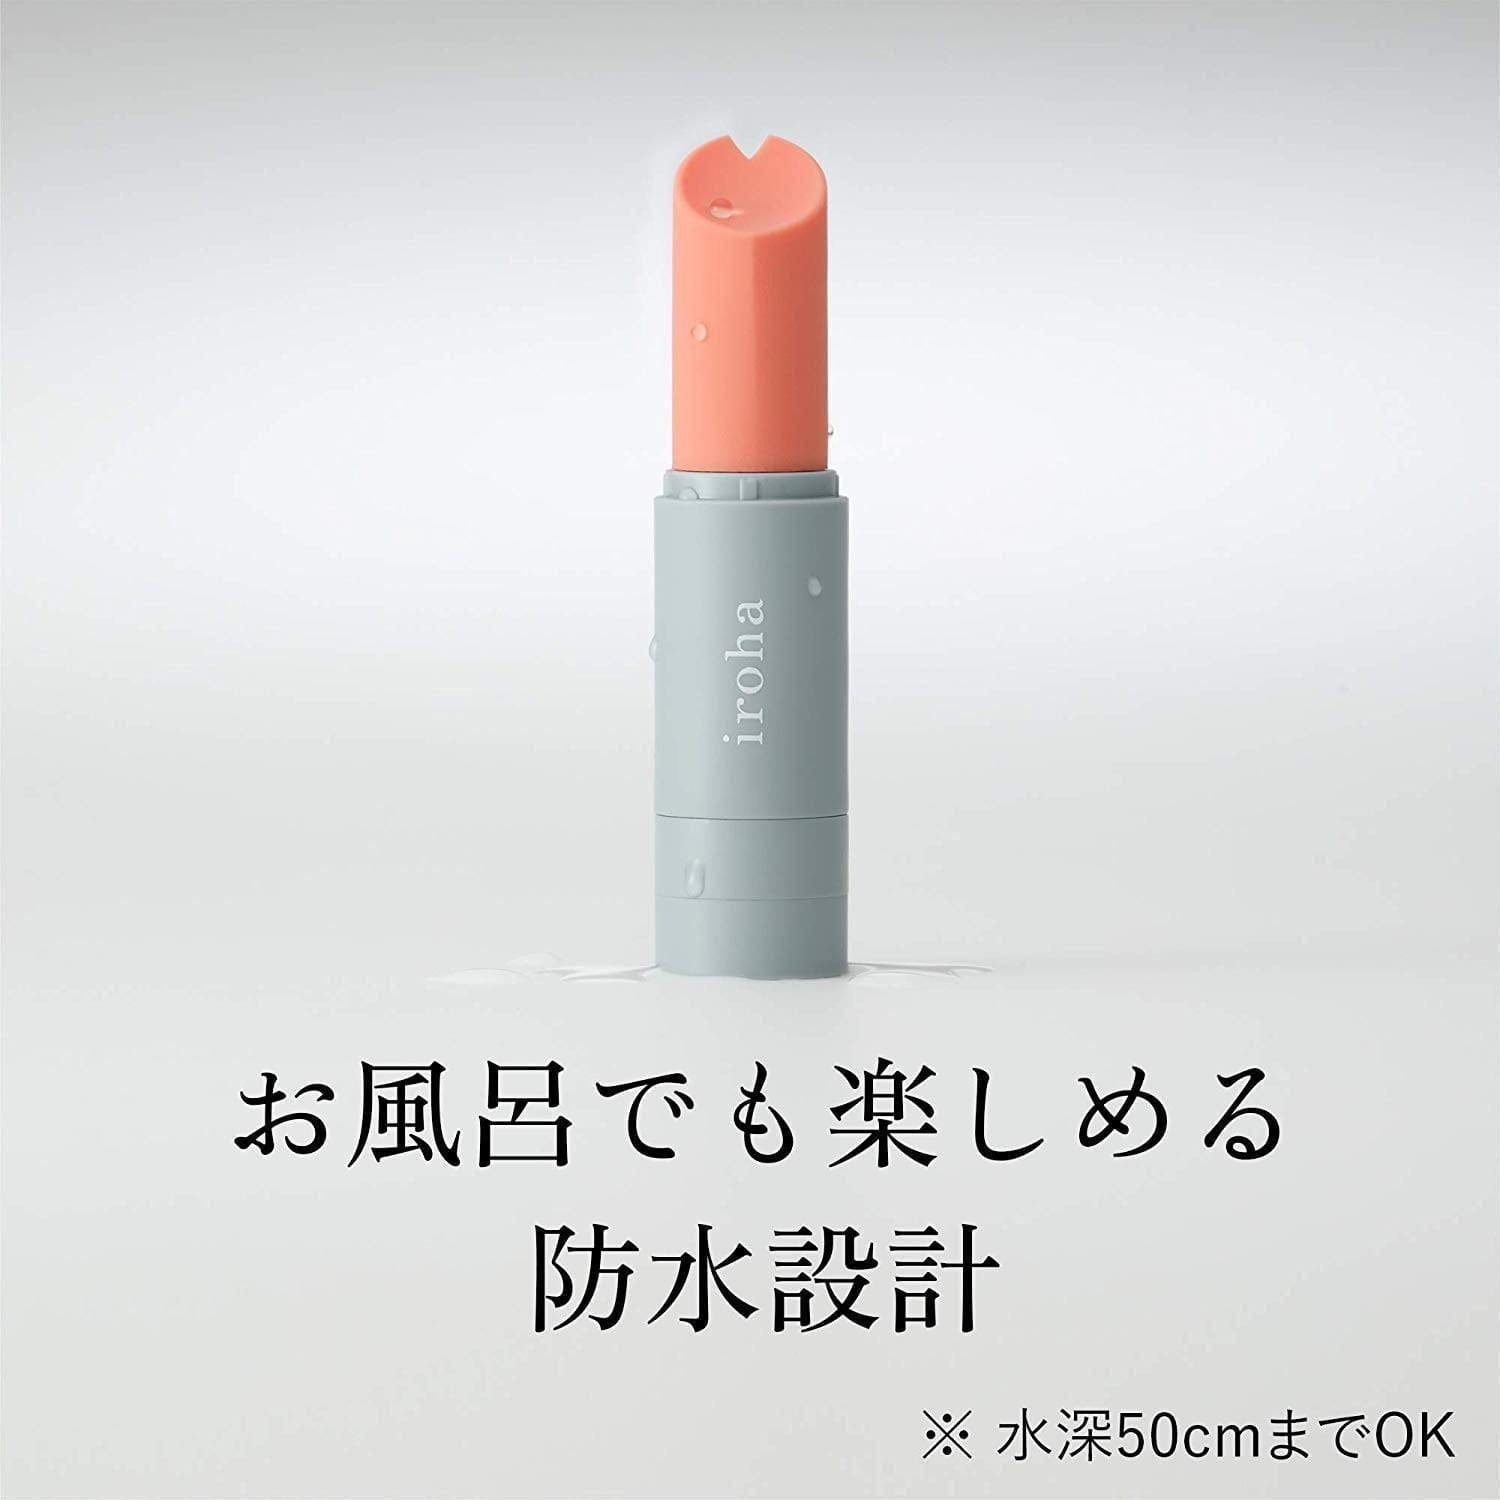 Tenga - Iroha Stick Discreet Vibrator (White/Pink) -  Discreet Toys  Durio.sg